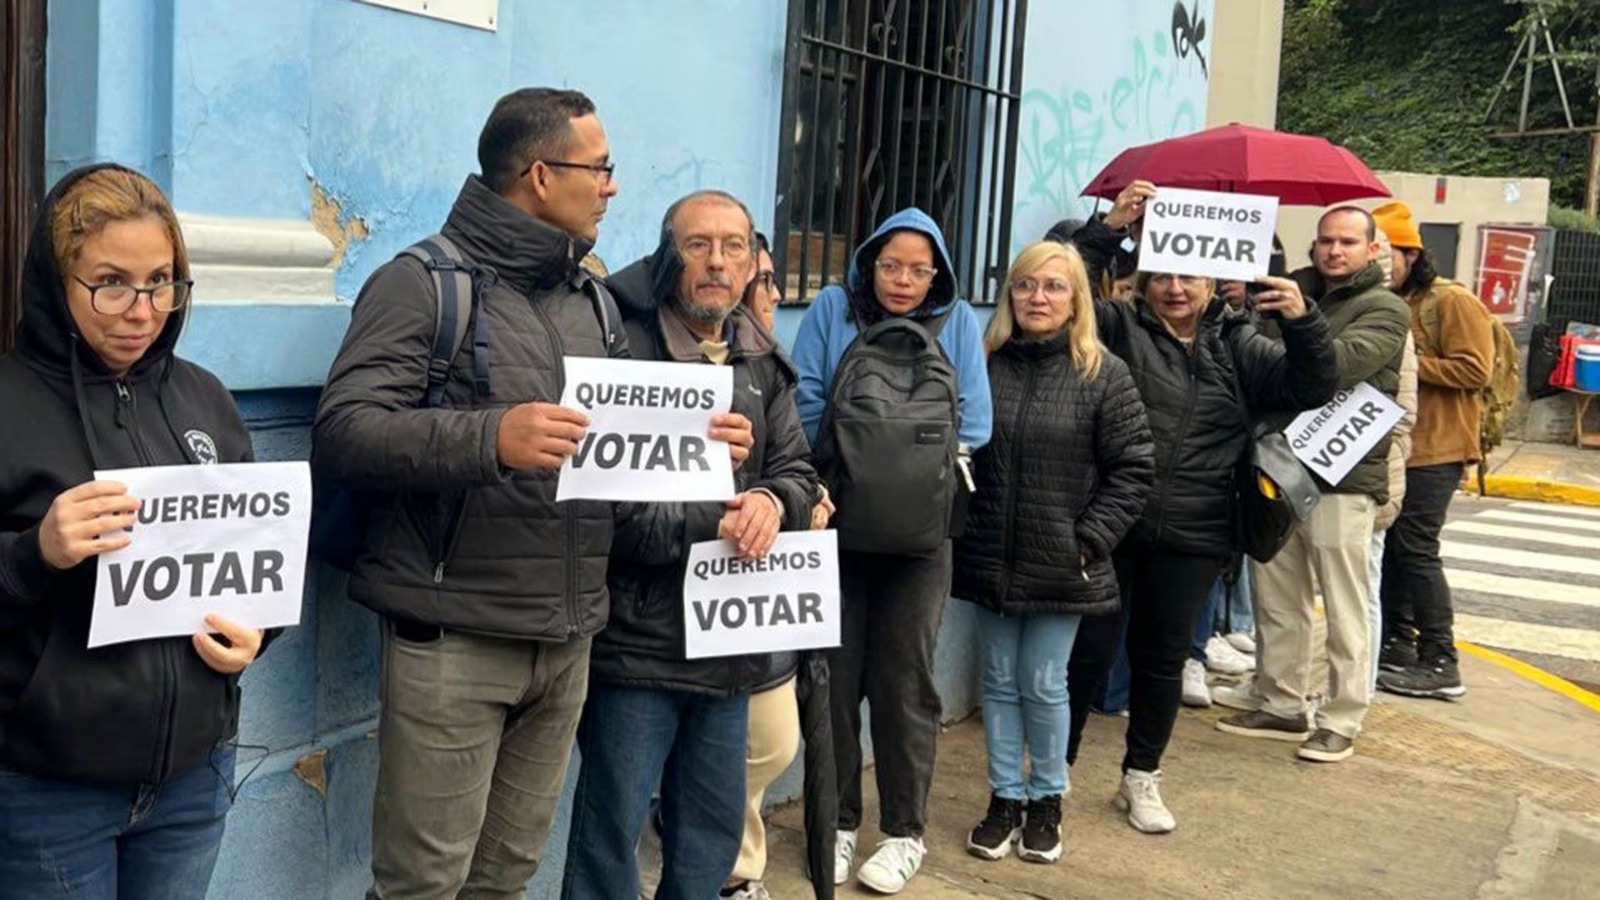 Venezolanos en Argentina denuncian falta de información de la embajada para poder votar el #28Jul